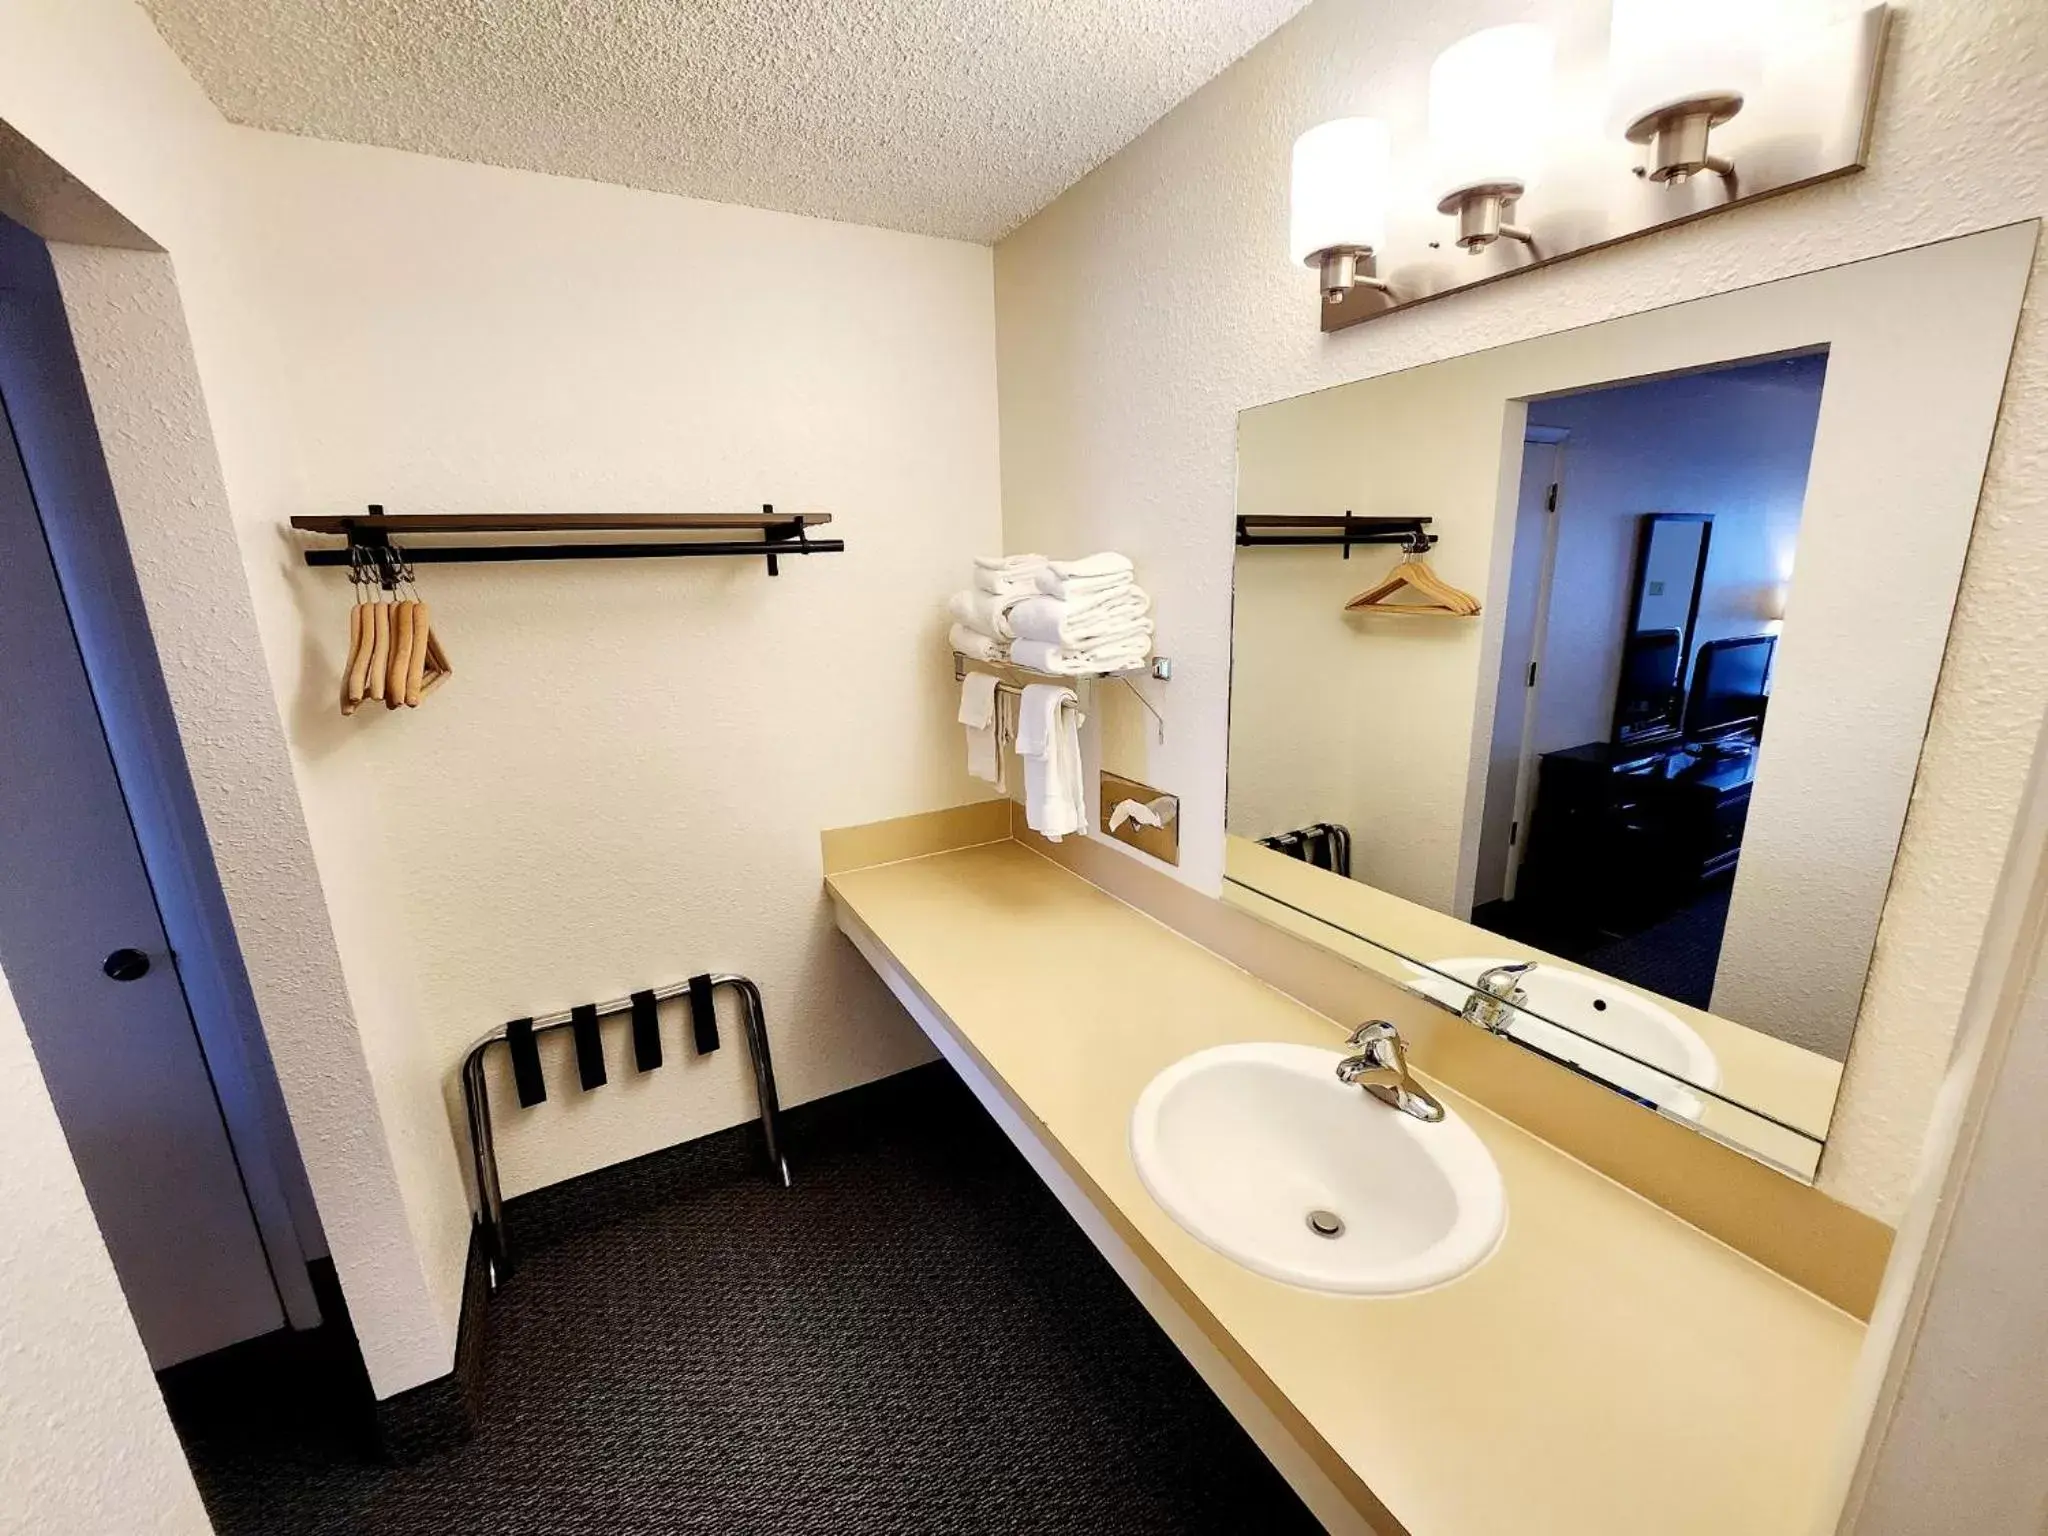 Bathroom in Budget Motel